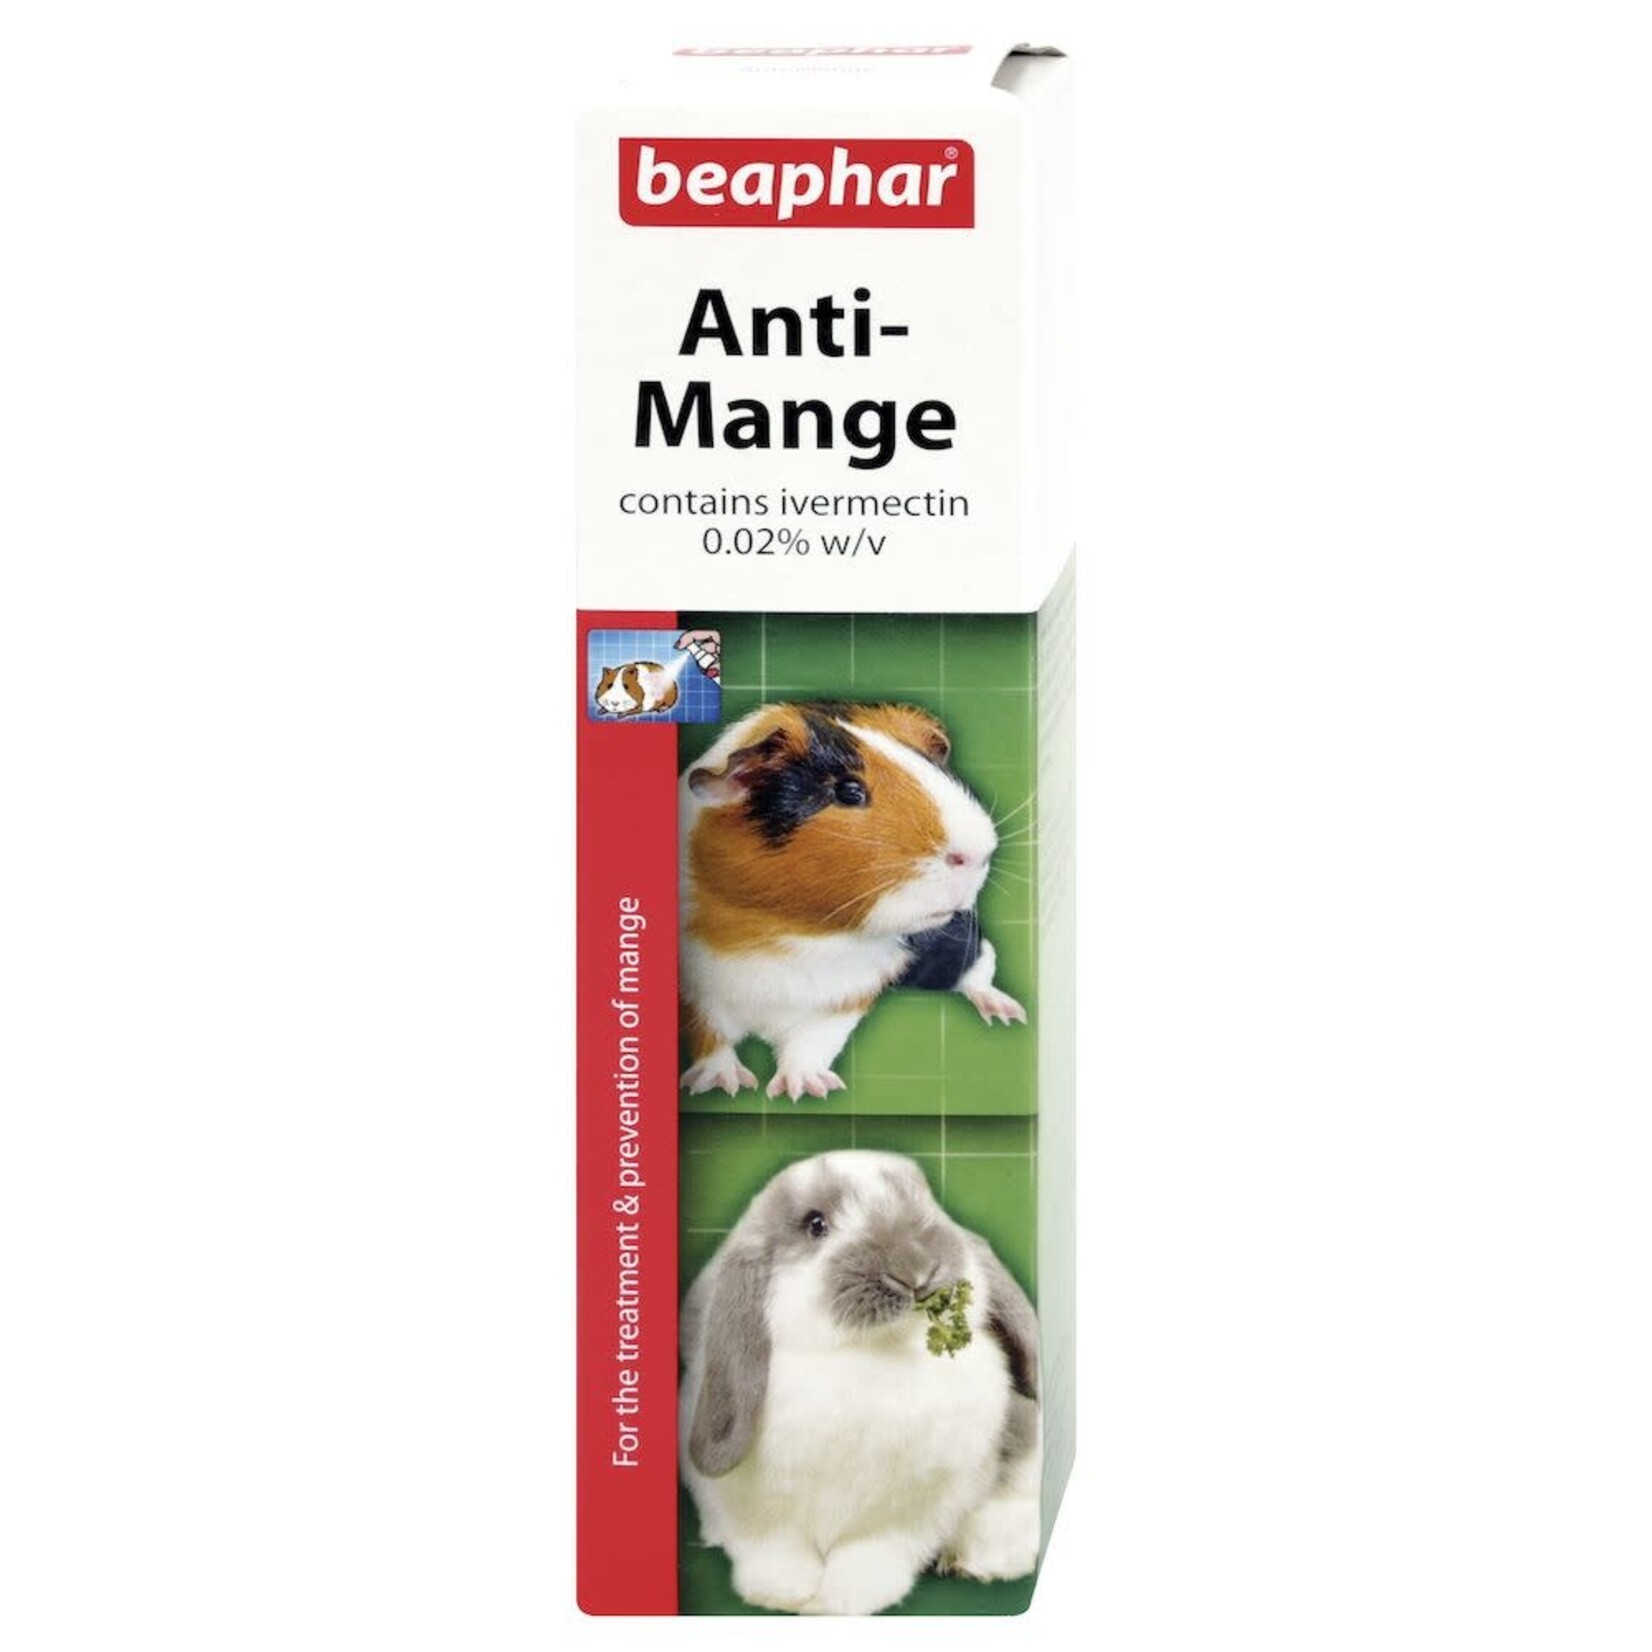 Beaphar Anti-Mange Spray for Rabbits & Guinea Pigs, 75ml